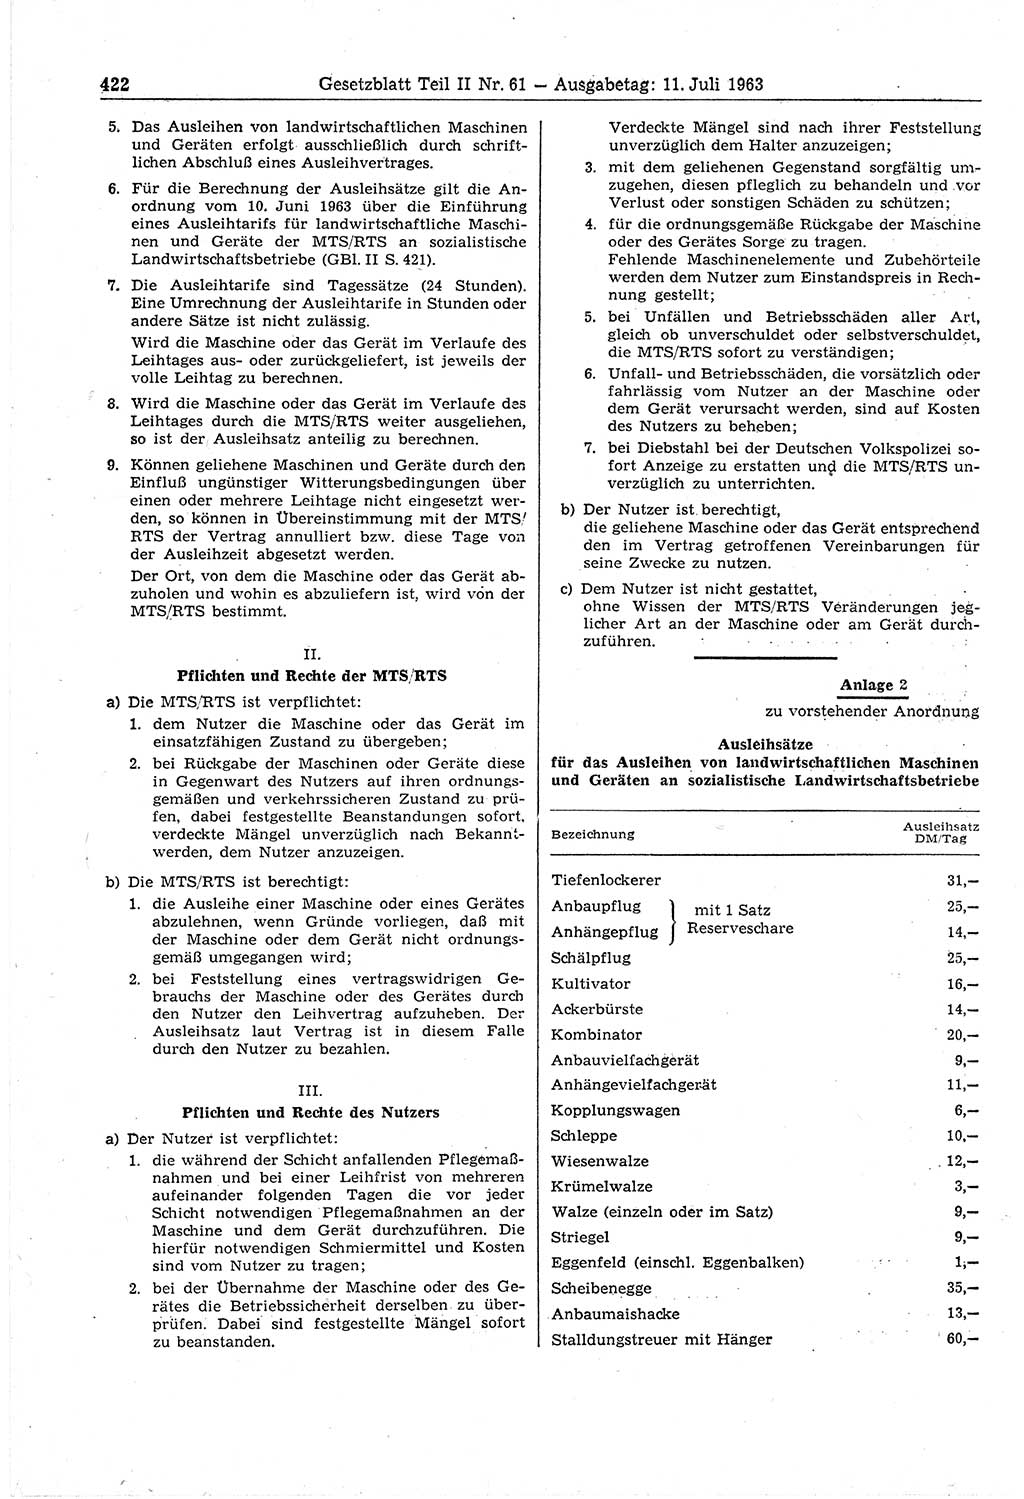 Gesetzblatt (GBl.) der Deutschen Demokratischen Republik (DDR) Teil ⅠⅠ 1963, Seite 422 (GBl. DDR ⅠⅠ 1963, S. 422)